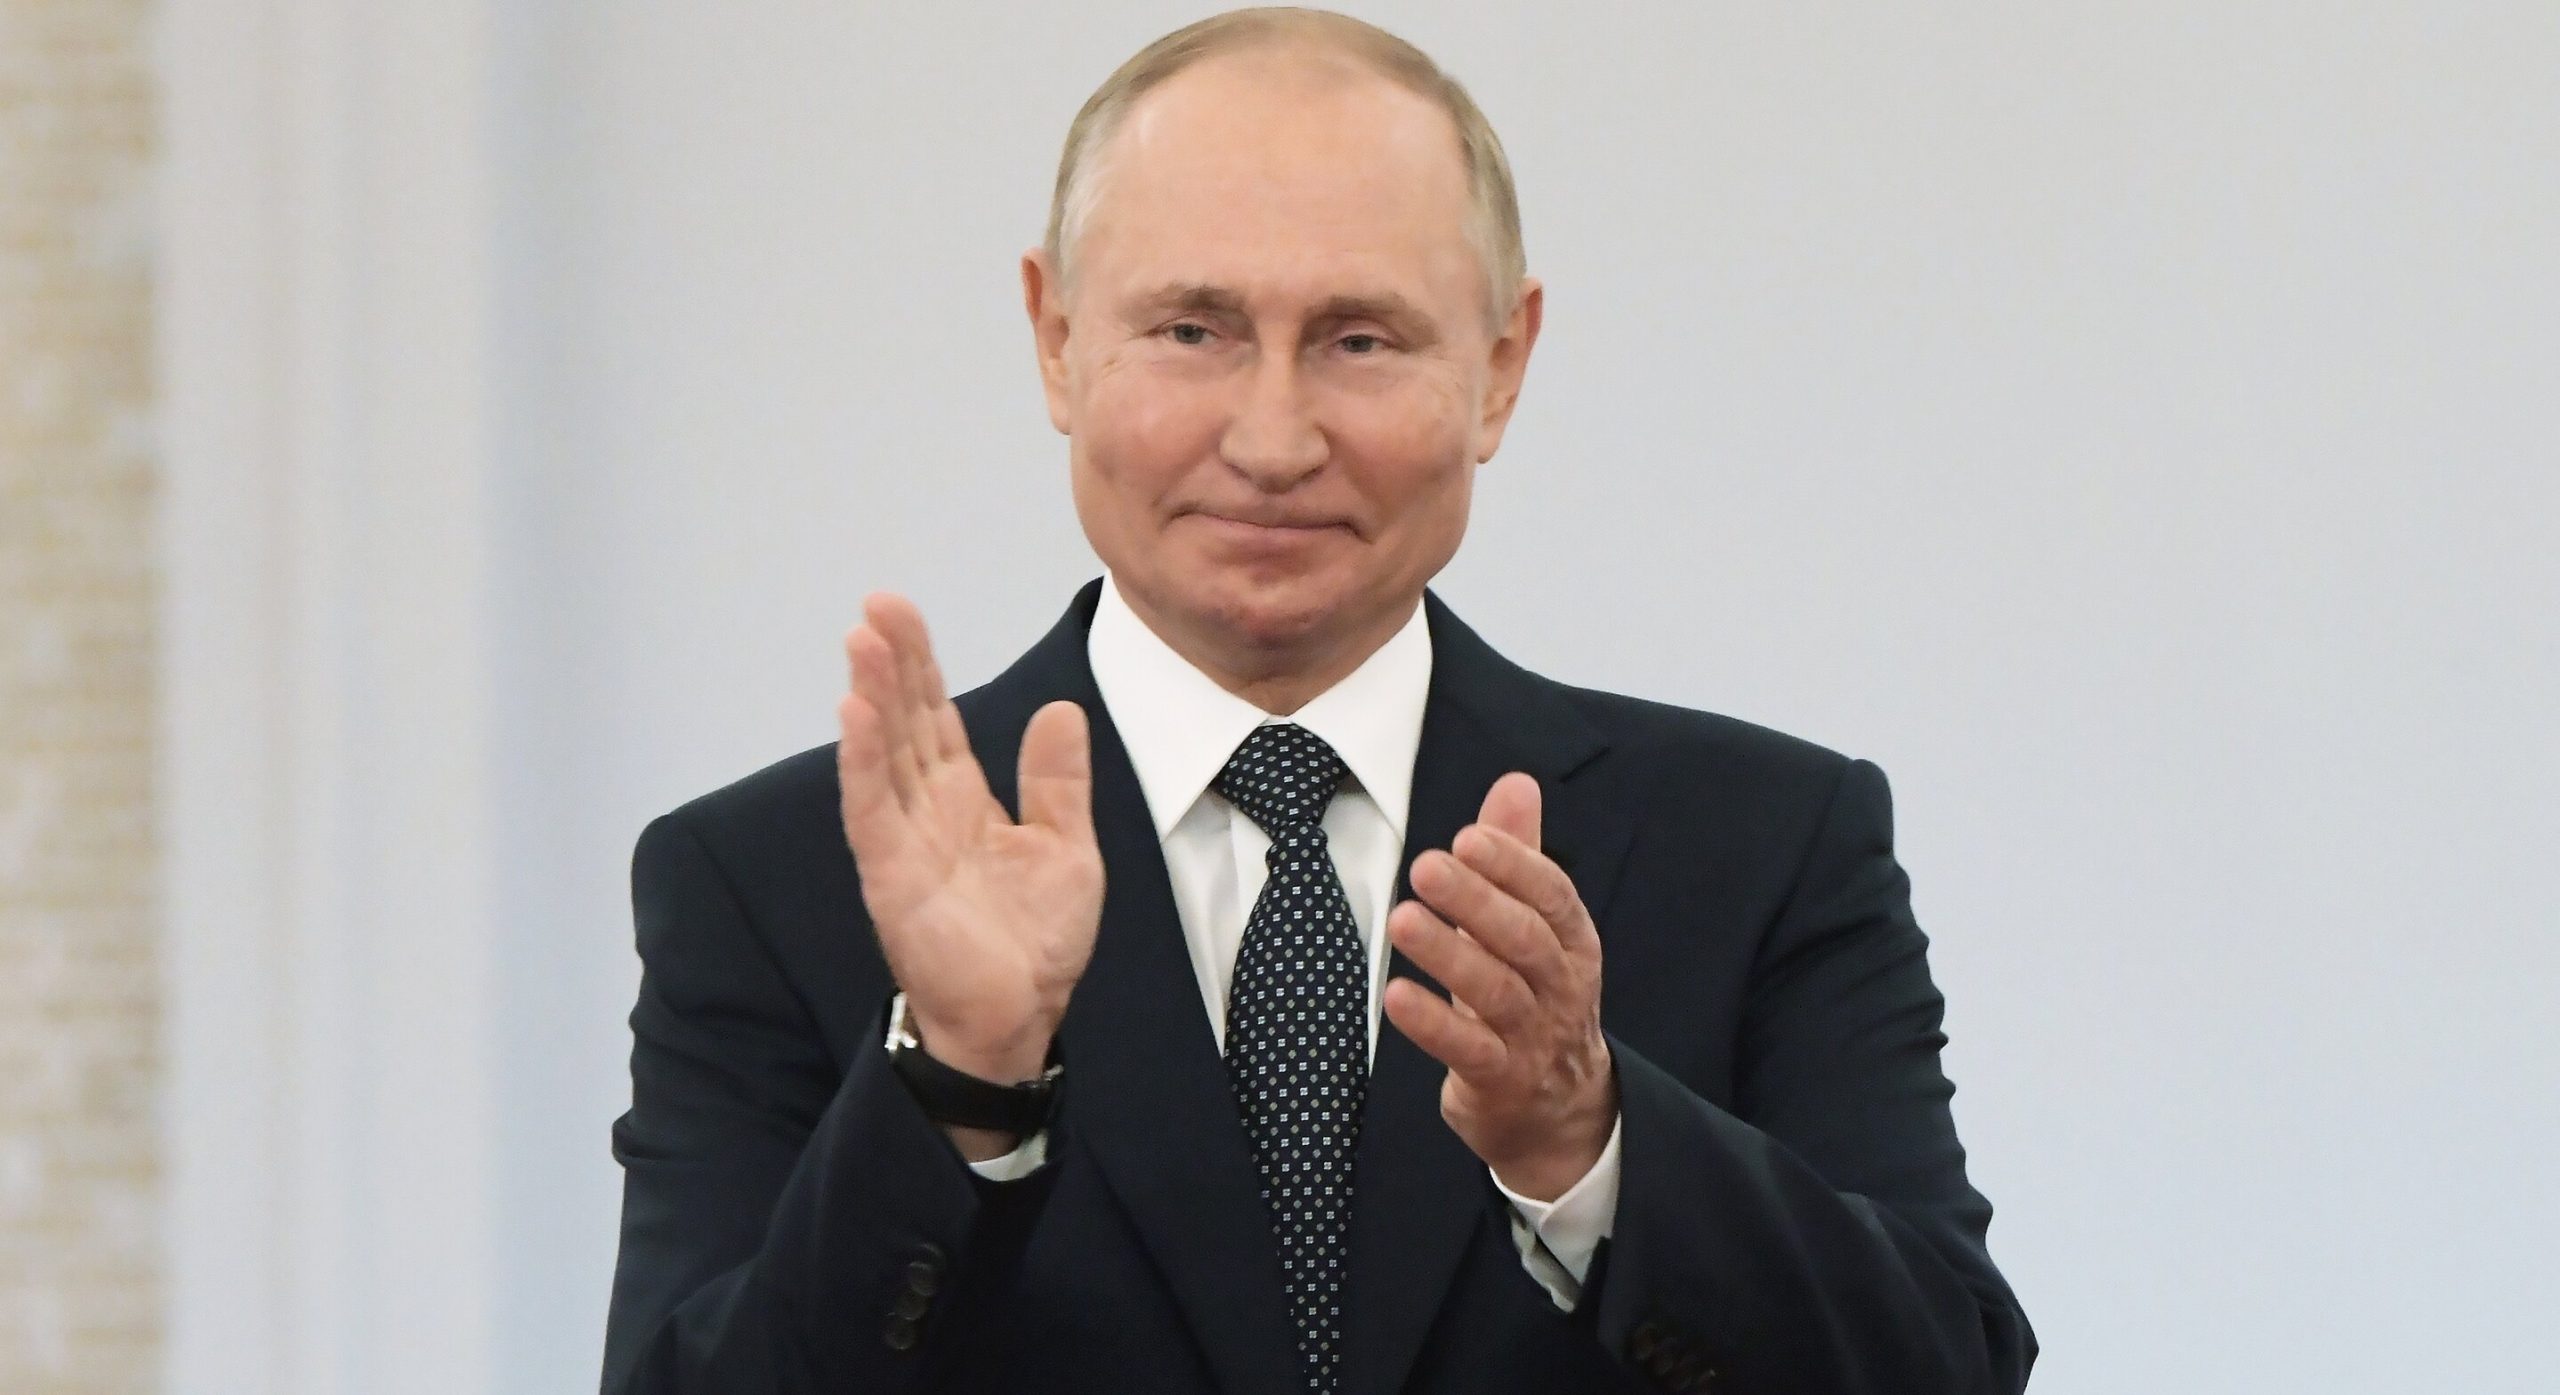 Candidați falși, oponenți în închisoare: Vladimir Putin îi îndeamnă pe ruși să voteze la alegerile parlamentare